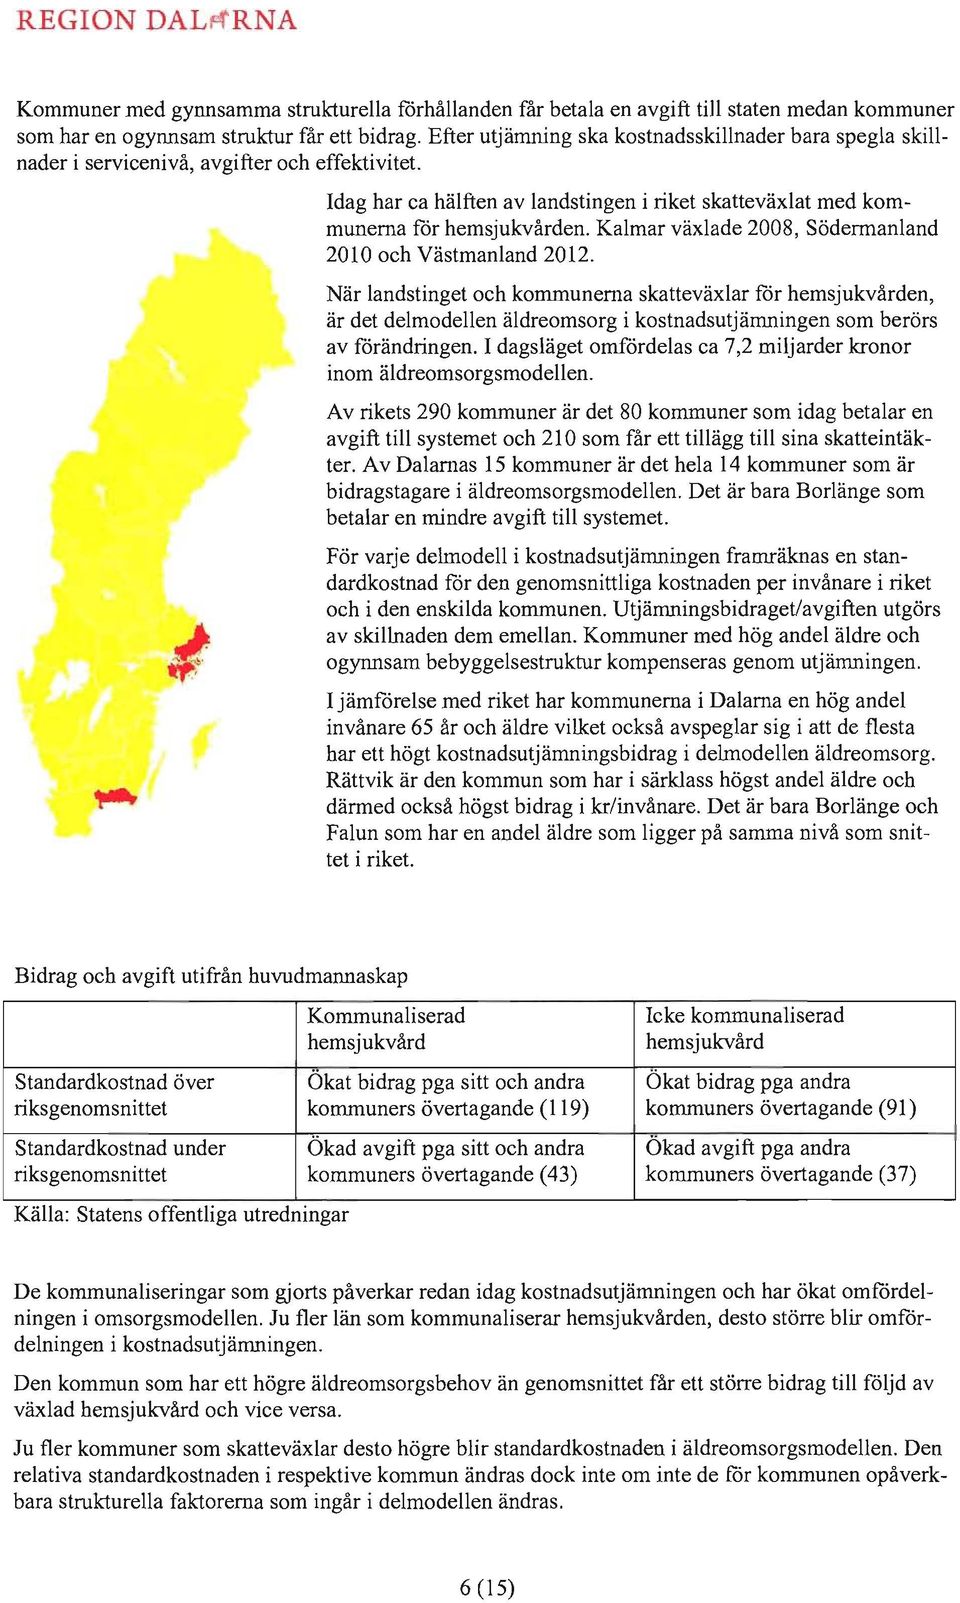 f Idag har ca hälften av landstingen i riket skatteväxlat med kommunerna för hemsjukvården. Kalmar växlade 2008, Södermanland 2010 och Västmanland 2012.